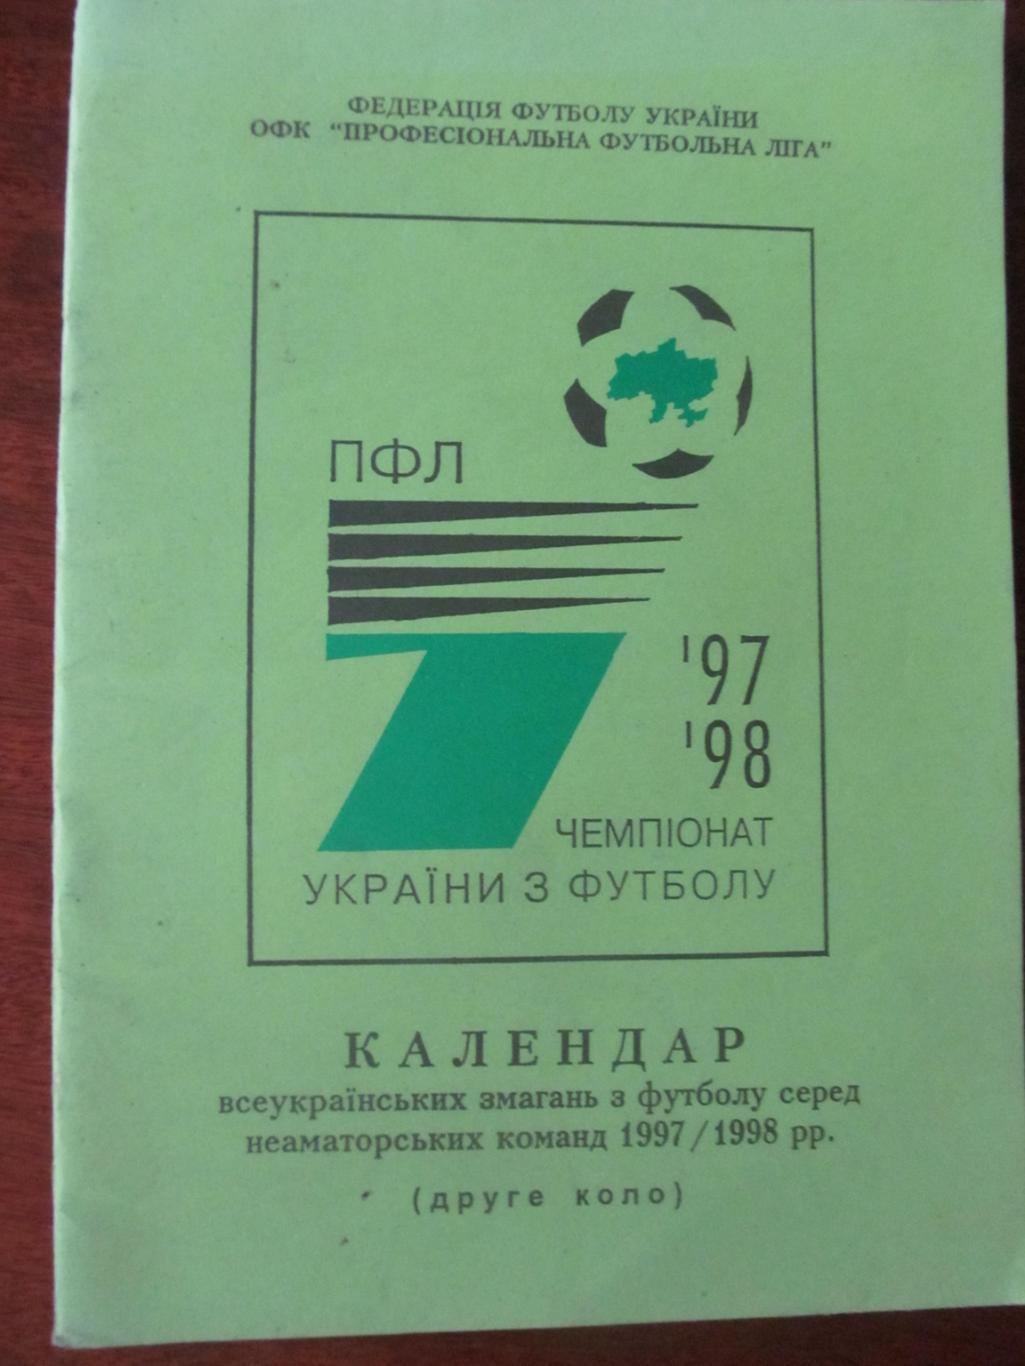 Календарь игр. ПФЛ УКРАИНЫ. 1997/1998. второй круг.*.